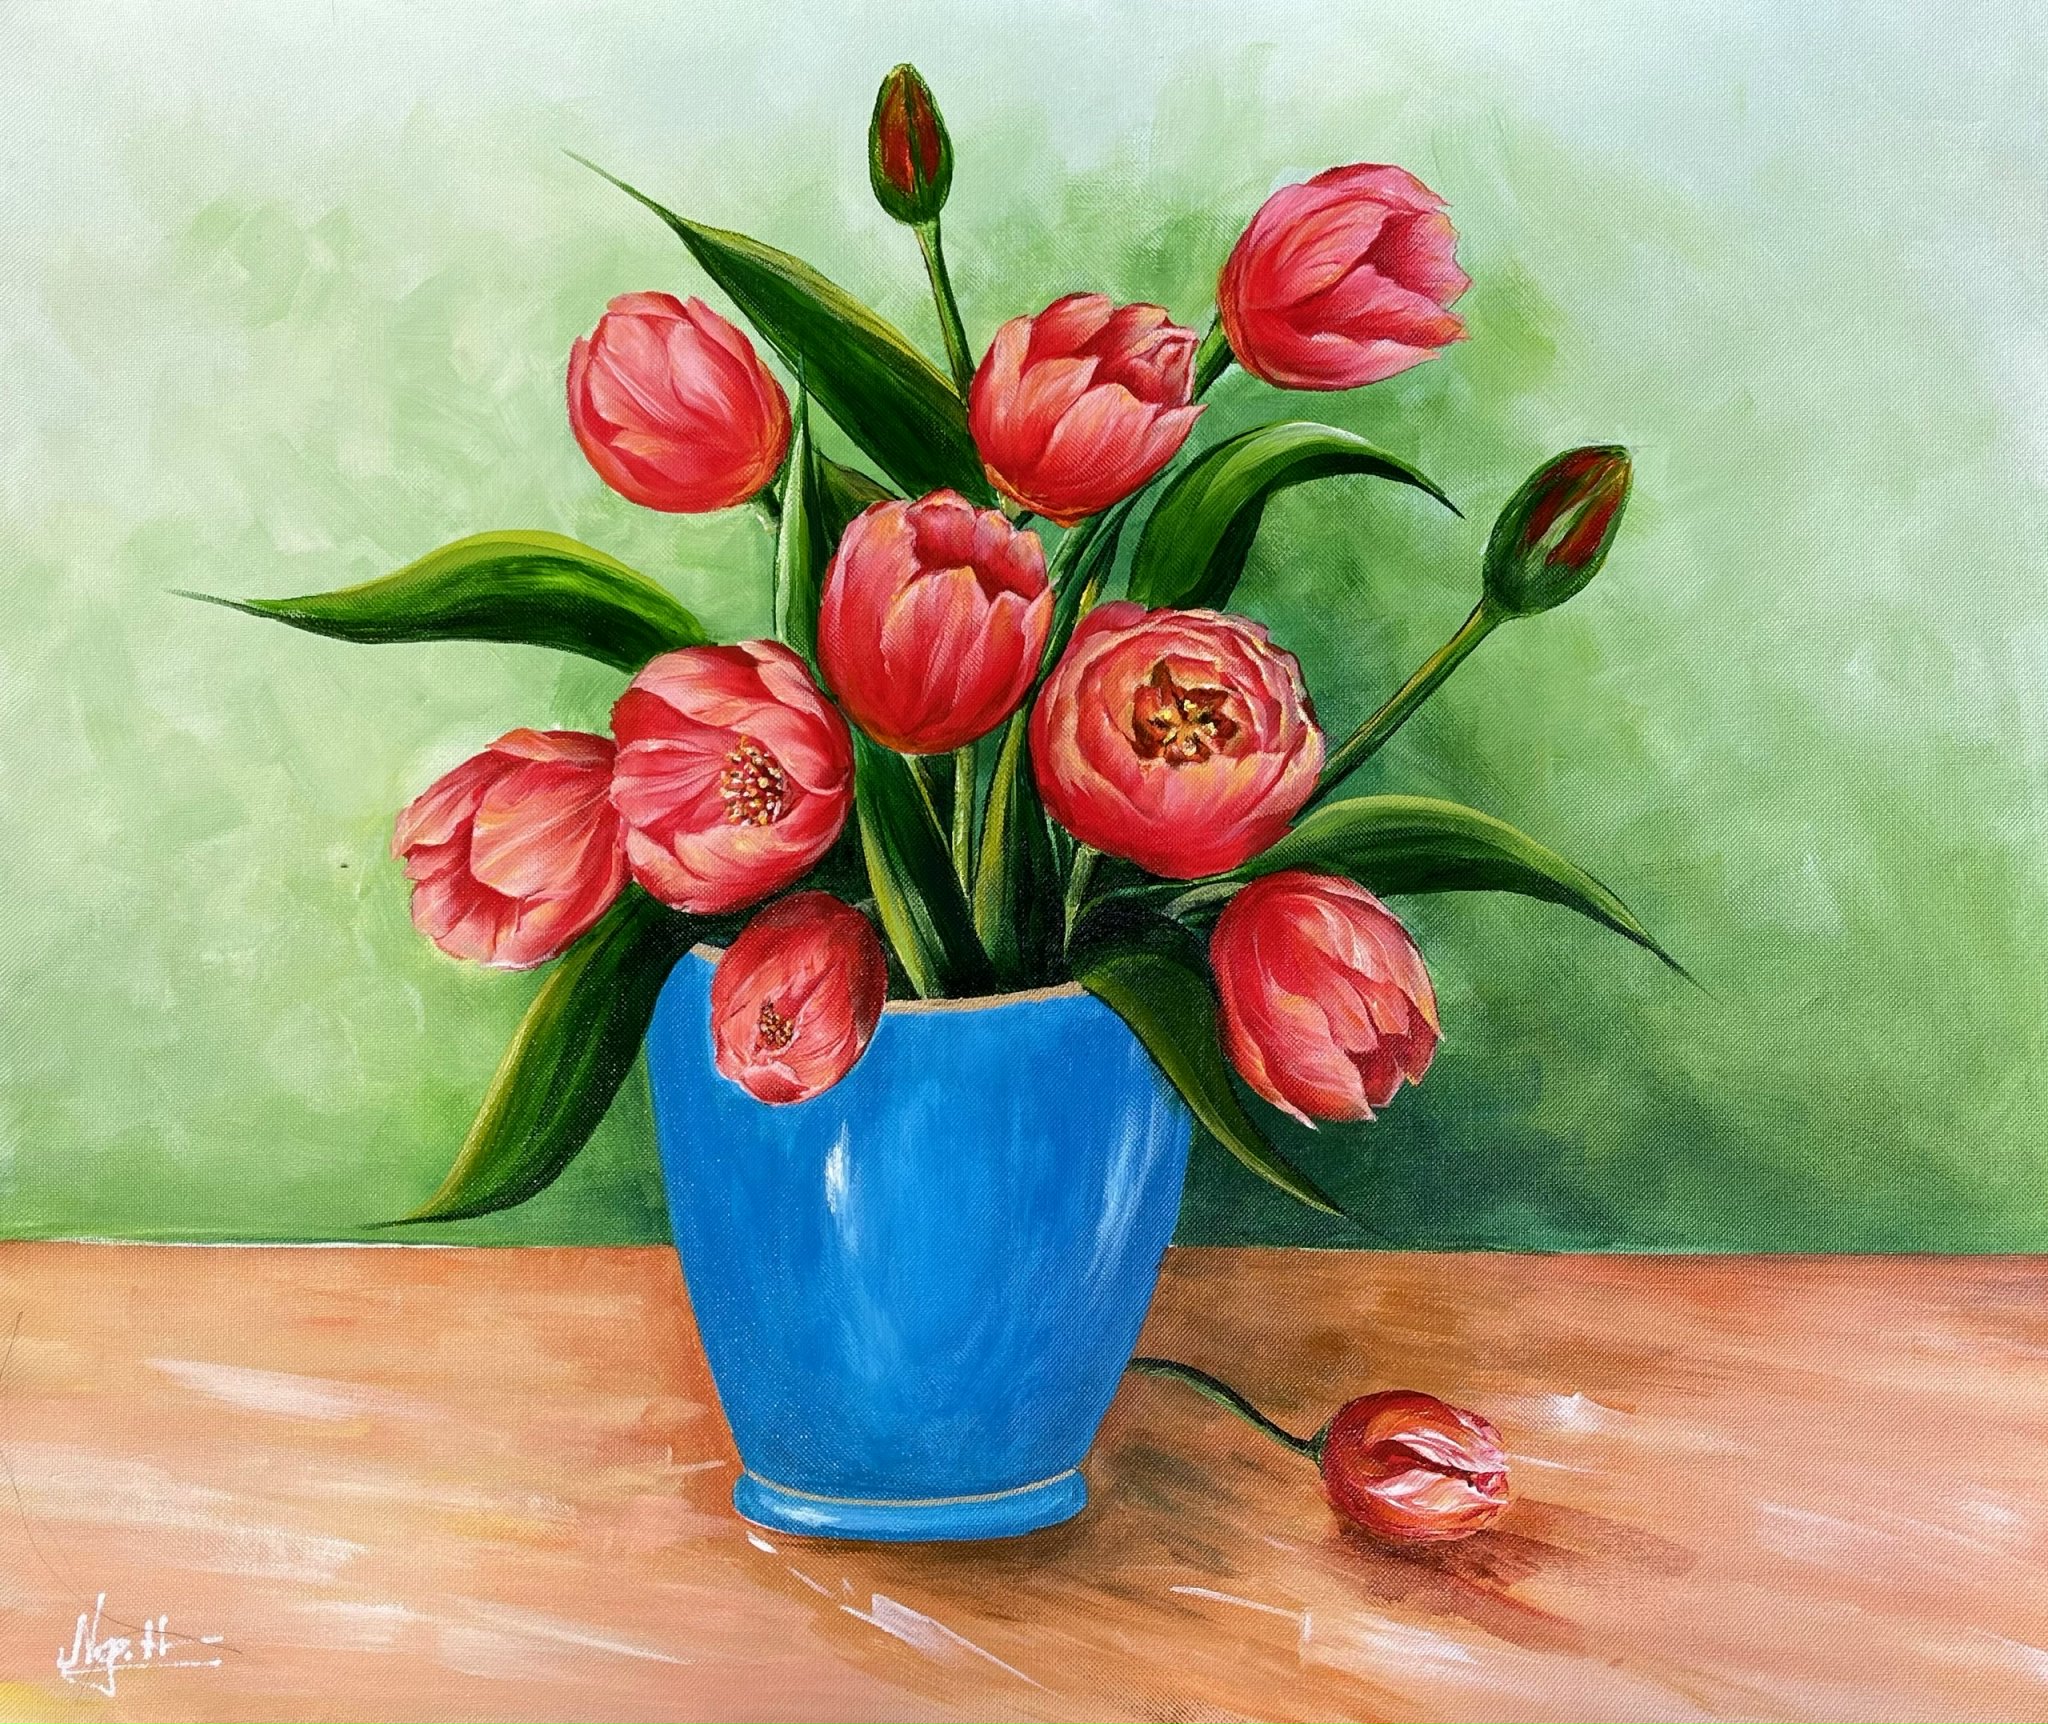 Bình hoa tulip là biểu tượng của tình yêu và sự thịnh vượng trong tình thân. Những đoá tulip tươi sáng tạo nên một bộ sưu tập bình hoa đẹp mắt và xúc động. Hãy cùng chiêm ngưỡng hình ảnh những bình hoa tulip đầy mê hoặc này!